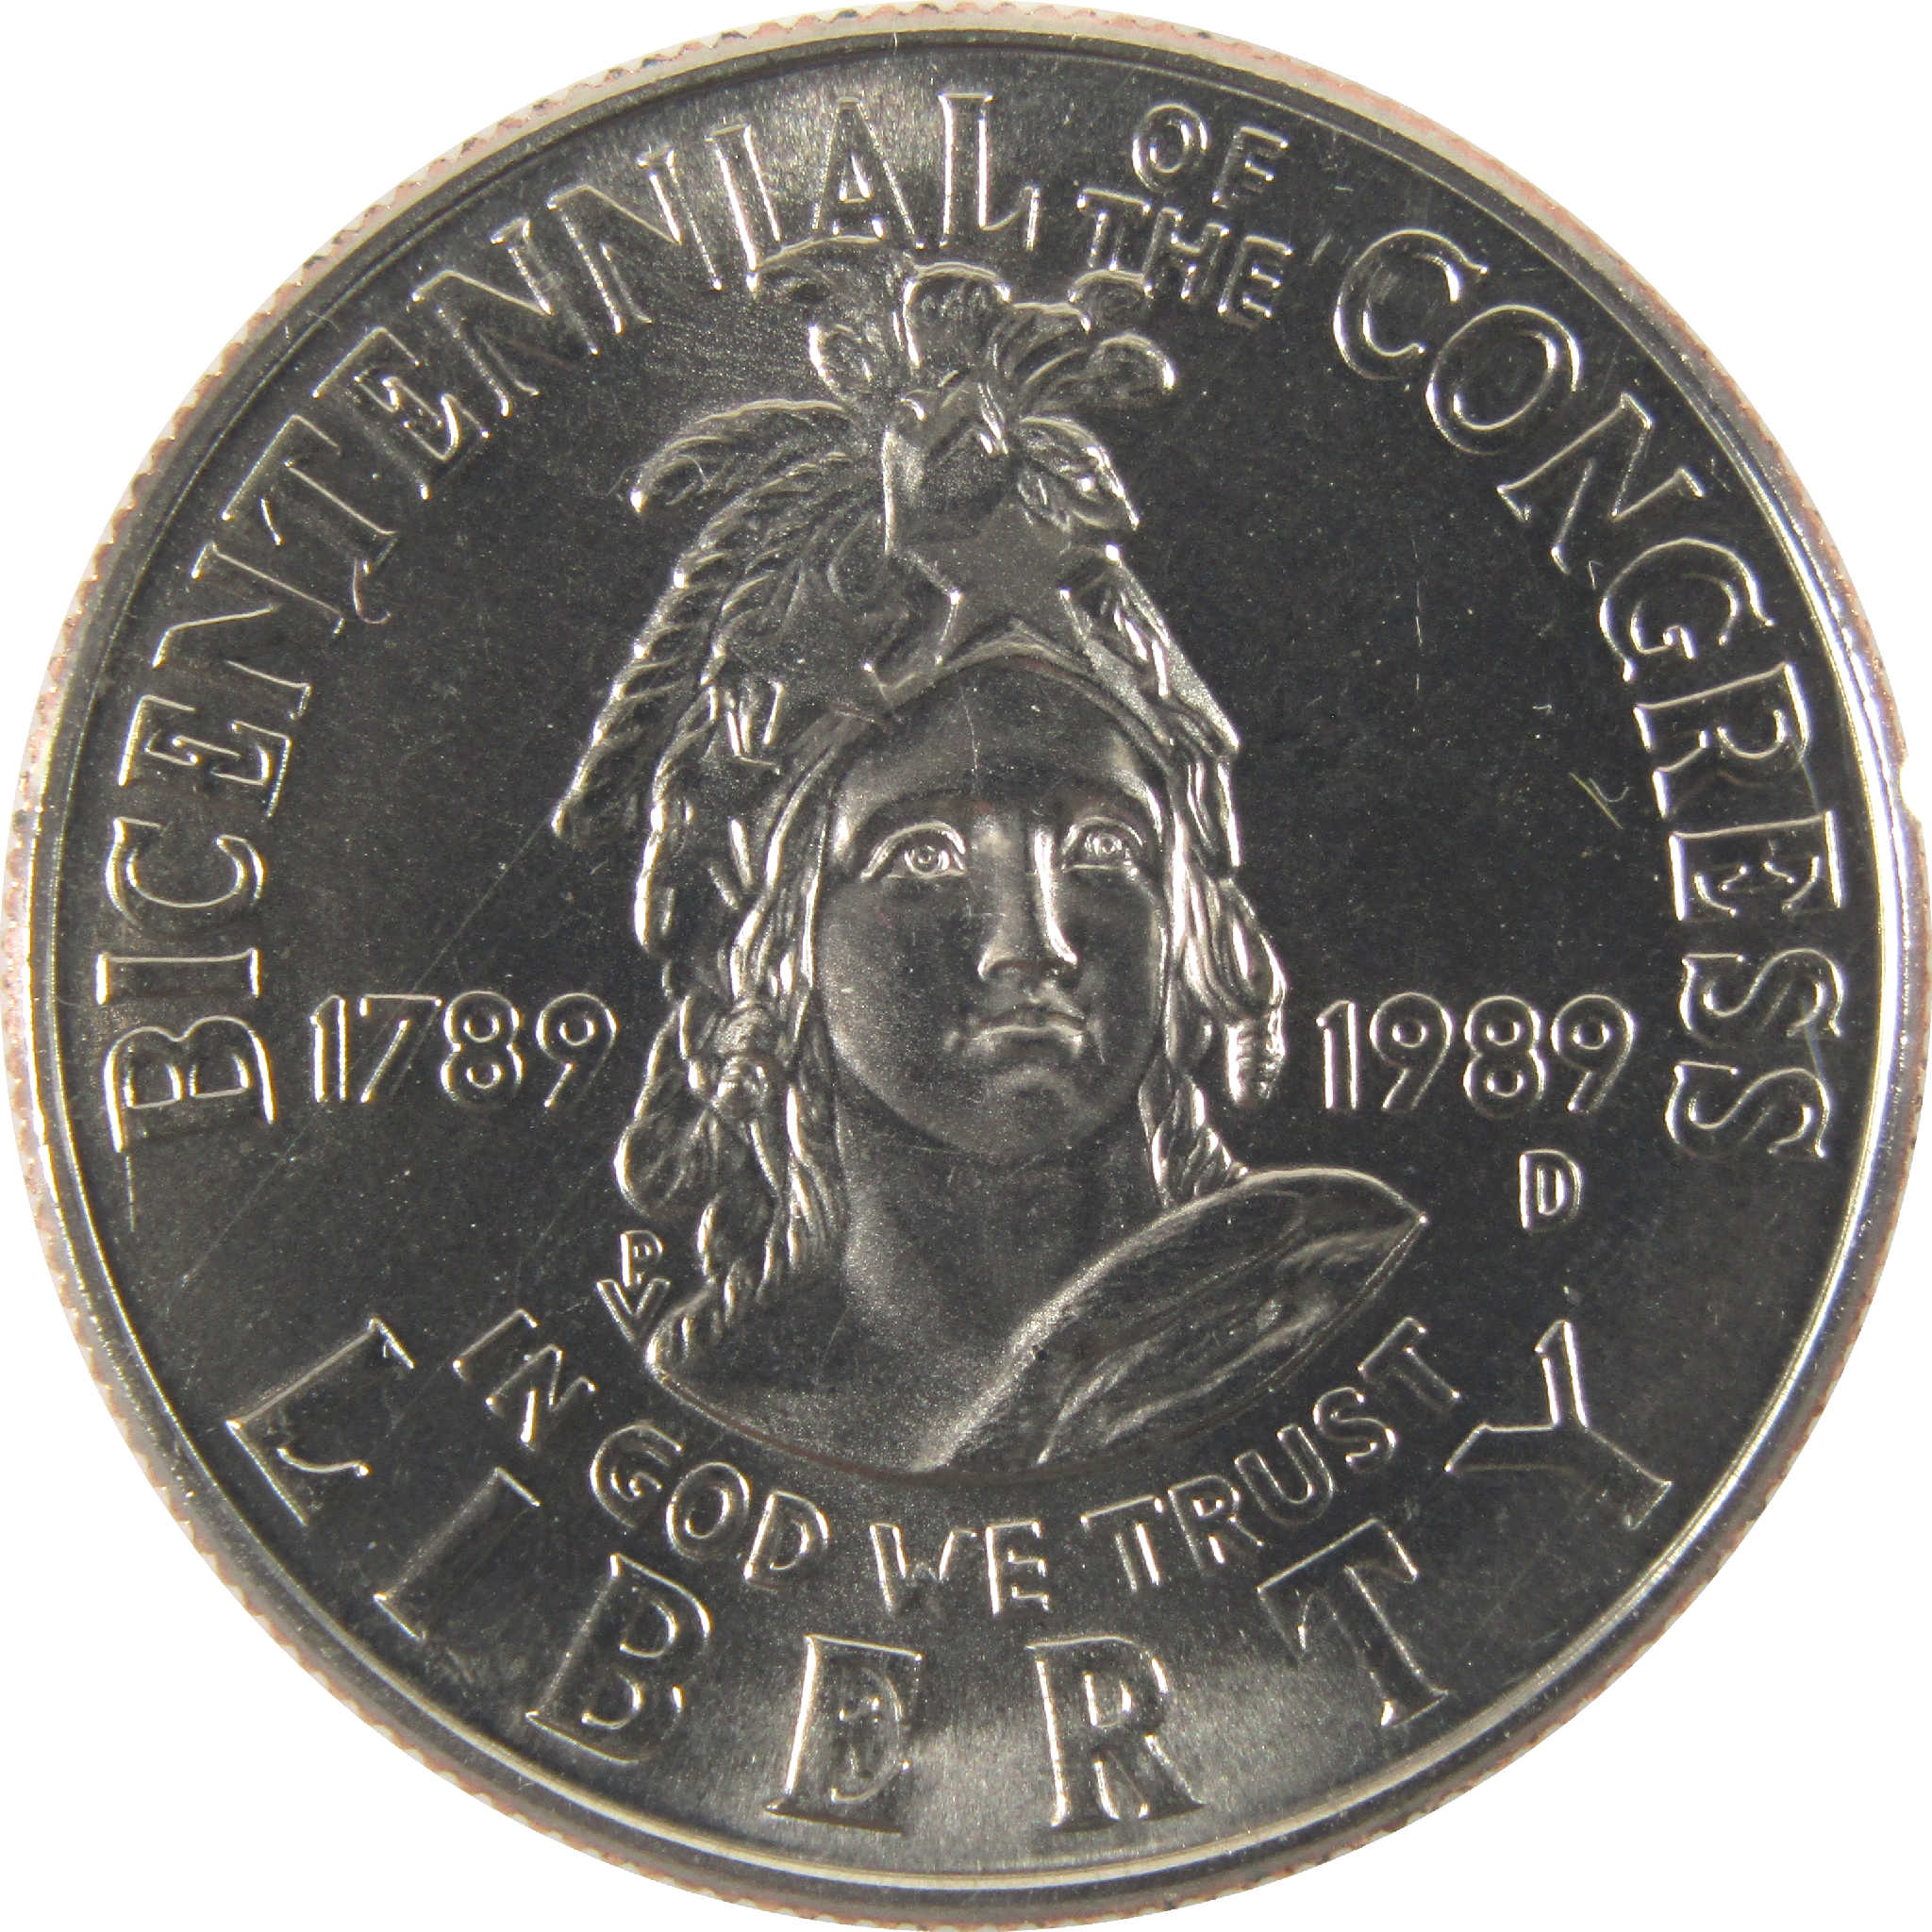 Congress Bicentennial Half Dollar 1989 D Unc Clad OGP COA SKU:CPC6325